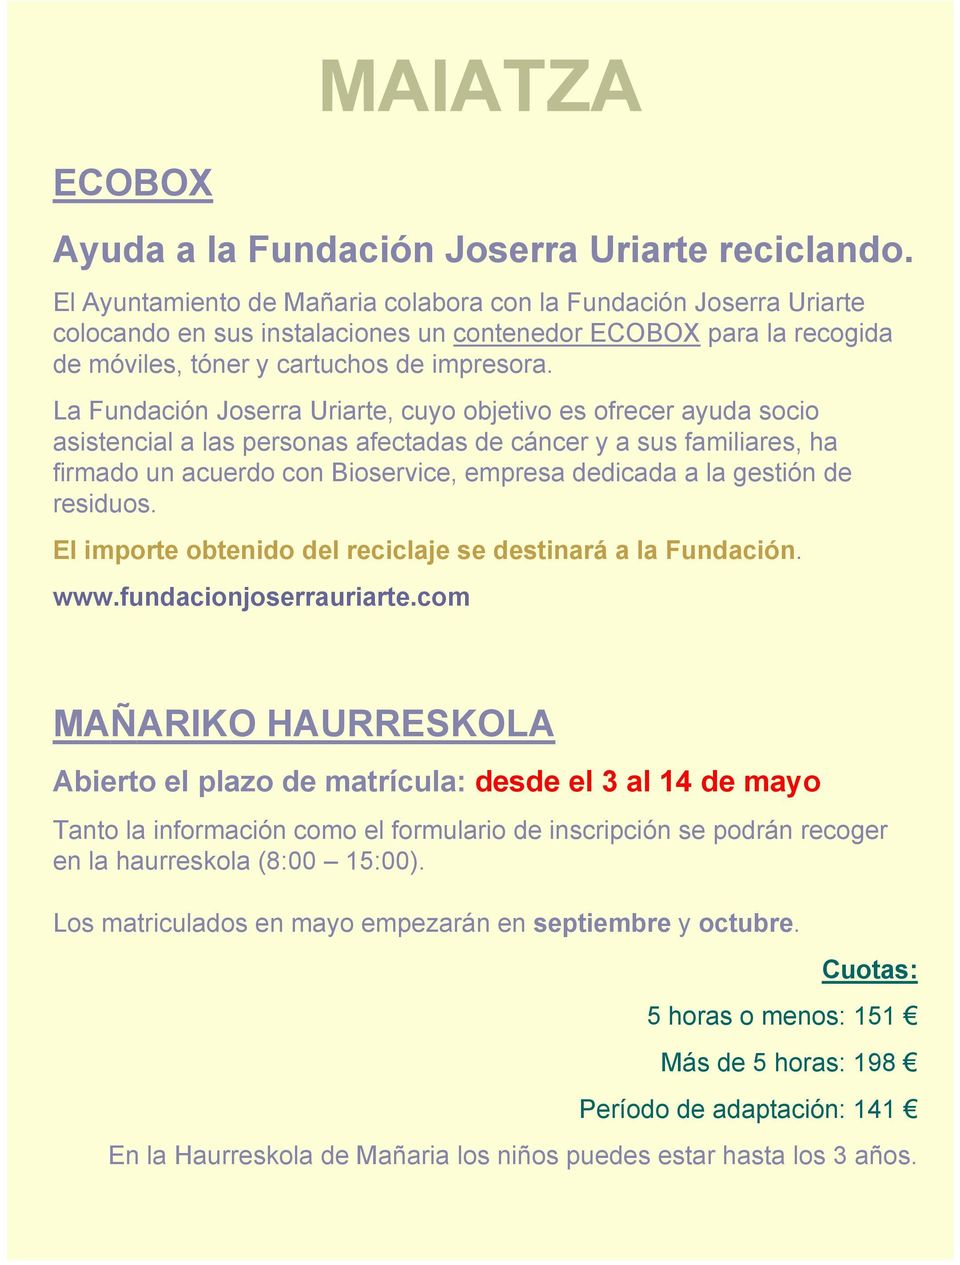 La Fundación Joserra Uriarte, cuyo objetivo es ofrecer ayuda socio asistencial a las personas afectadas de cáncer y a sus familiares, ha firmado un acuerdo con Bioservice, empresa dedicada a la